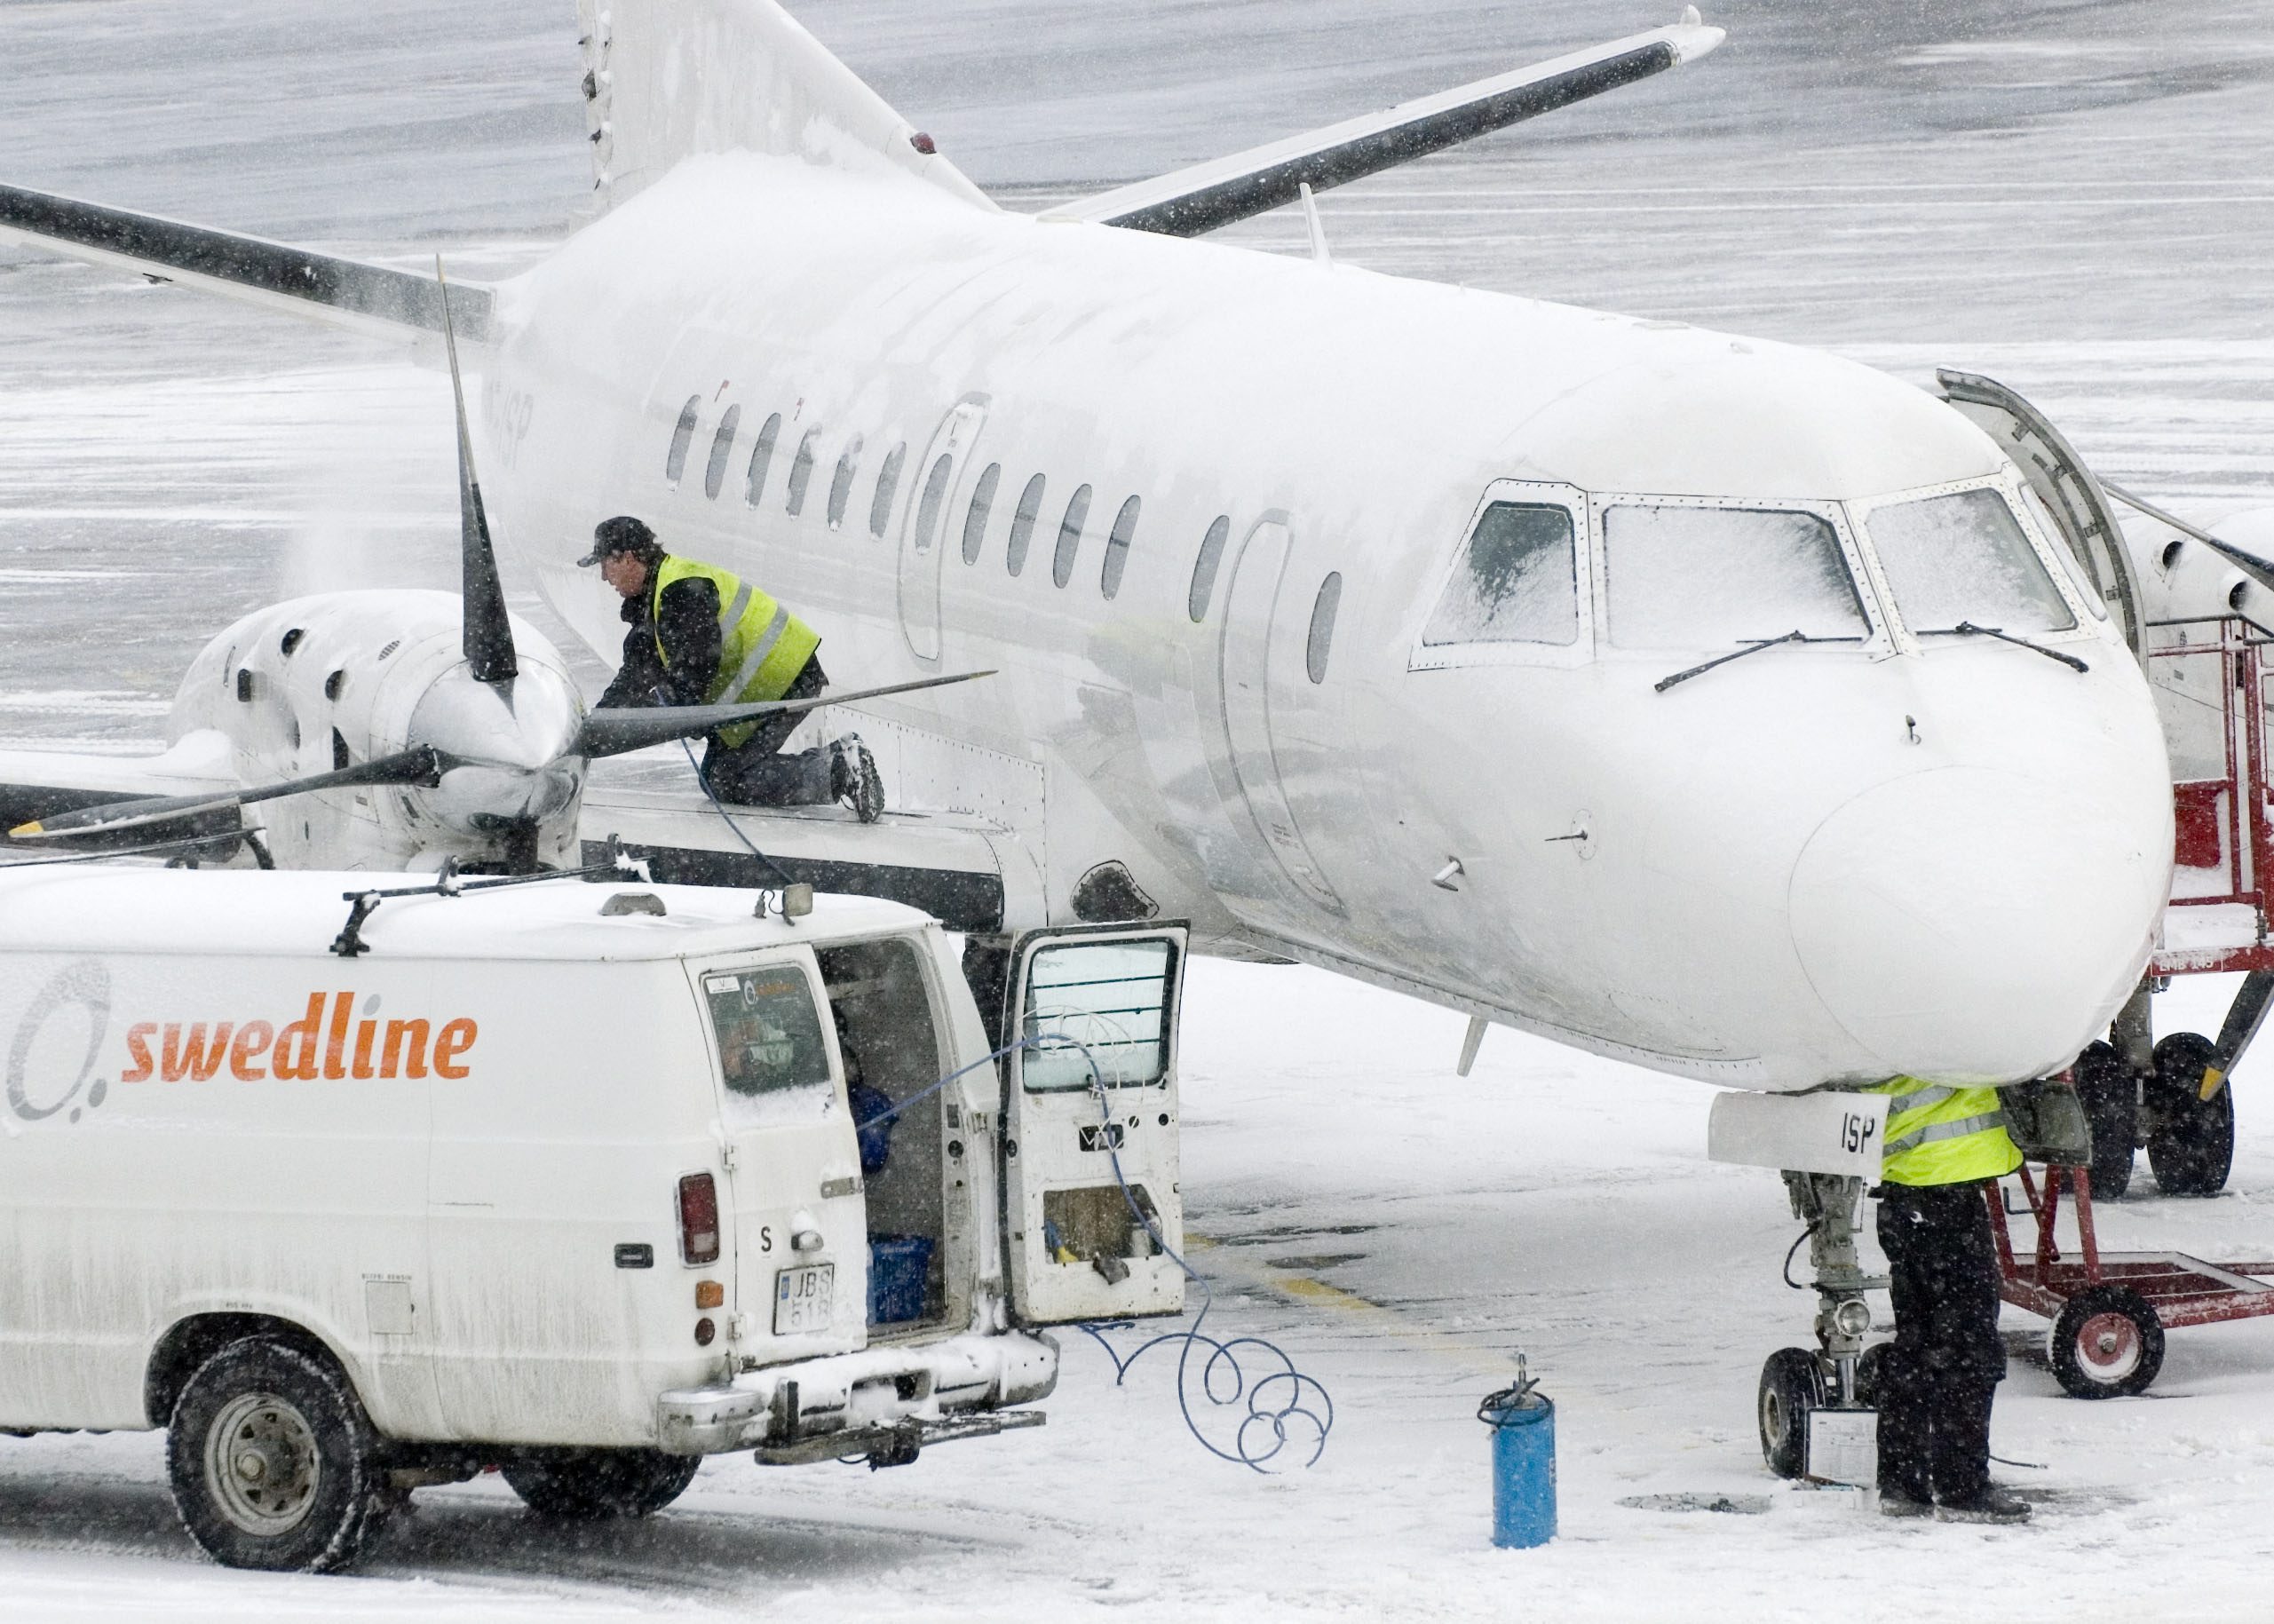 Ett Next Jet plan av modell SAAB 340 tvingades nödlanda i Östersund.